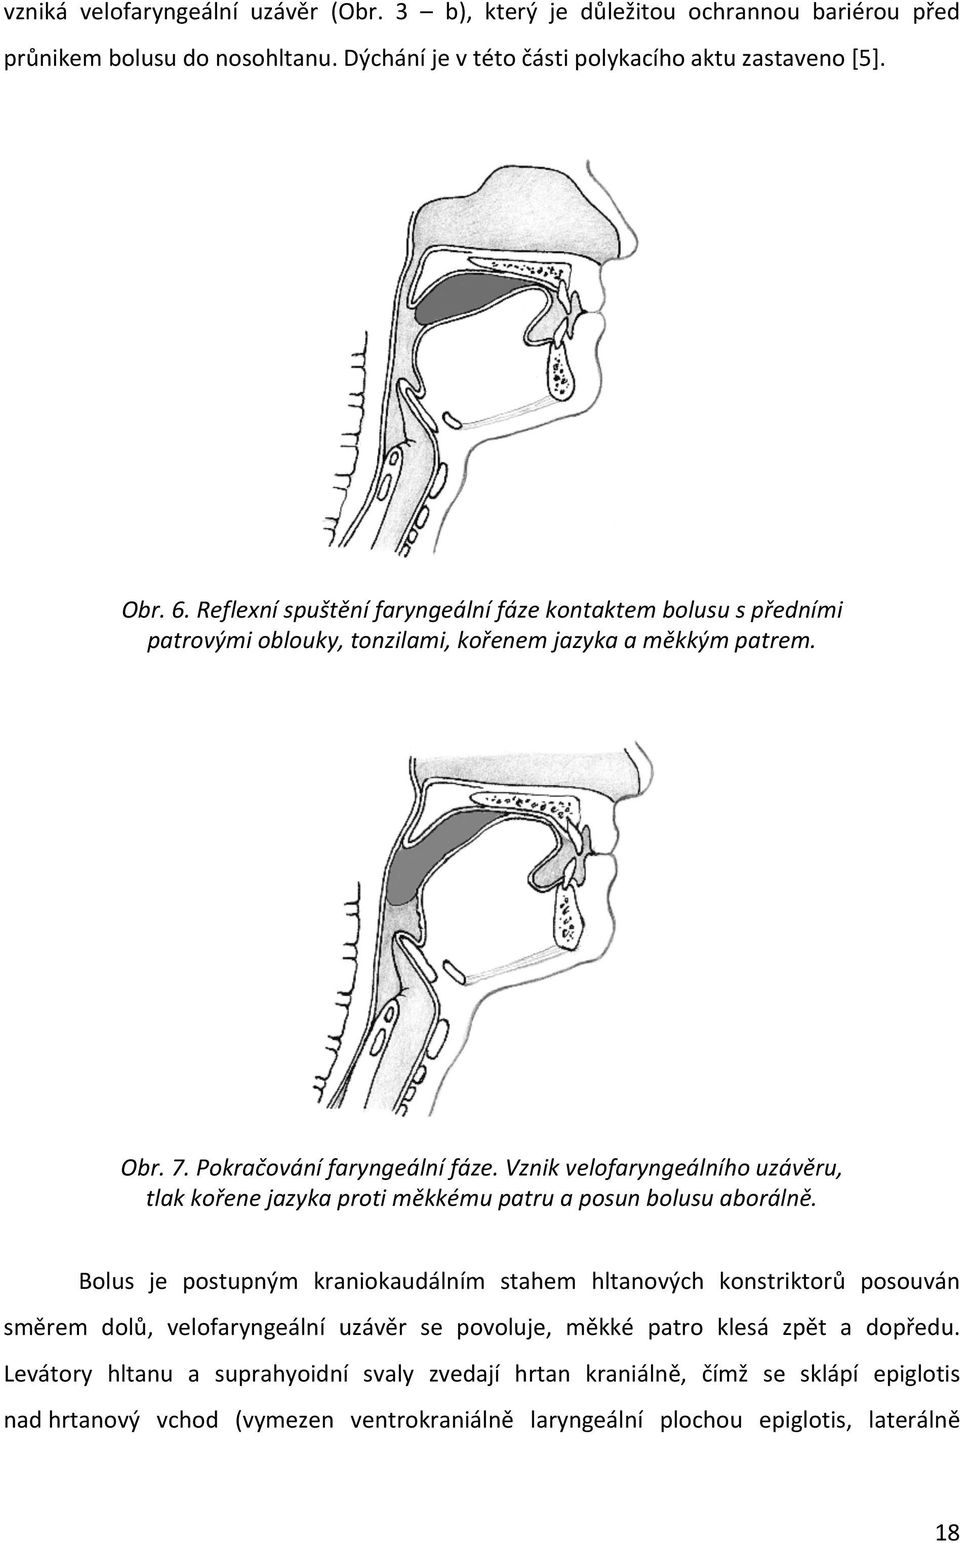 Vznik velofaryngeálního uzávěru, tlak kořene jazyka proti měkkému patru a posun bolusu aborálně.